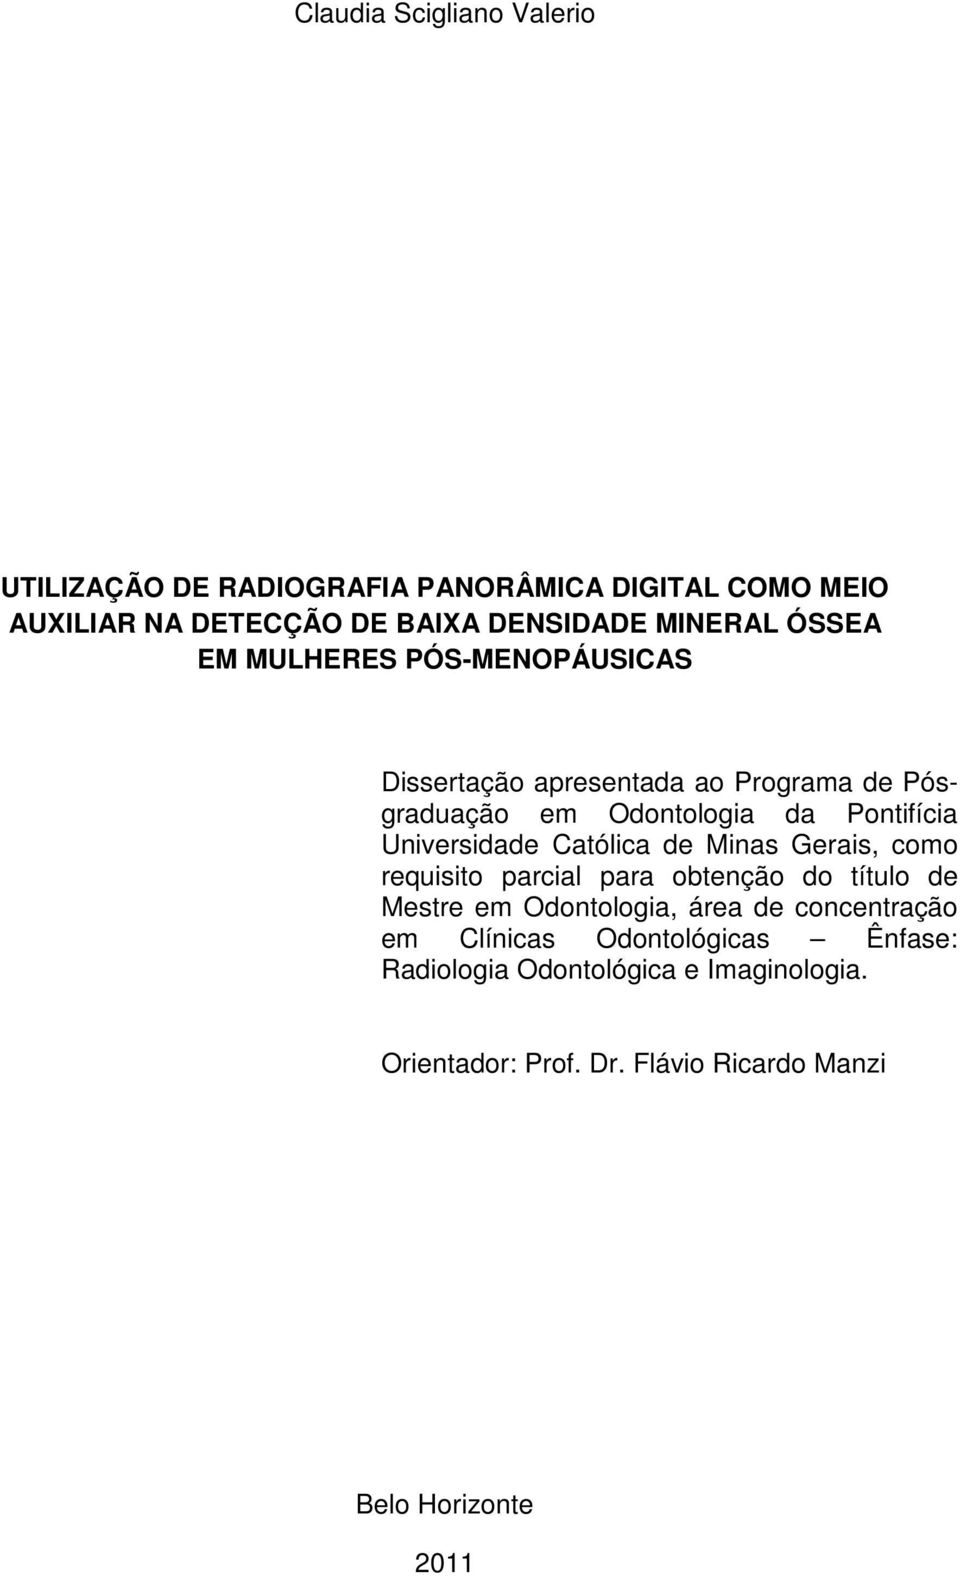 Católica de Minas Gerais, como requisito parcial para obtenção do título de Mestre em Odontologia, área de concentração em